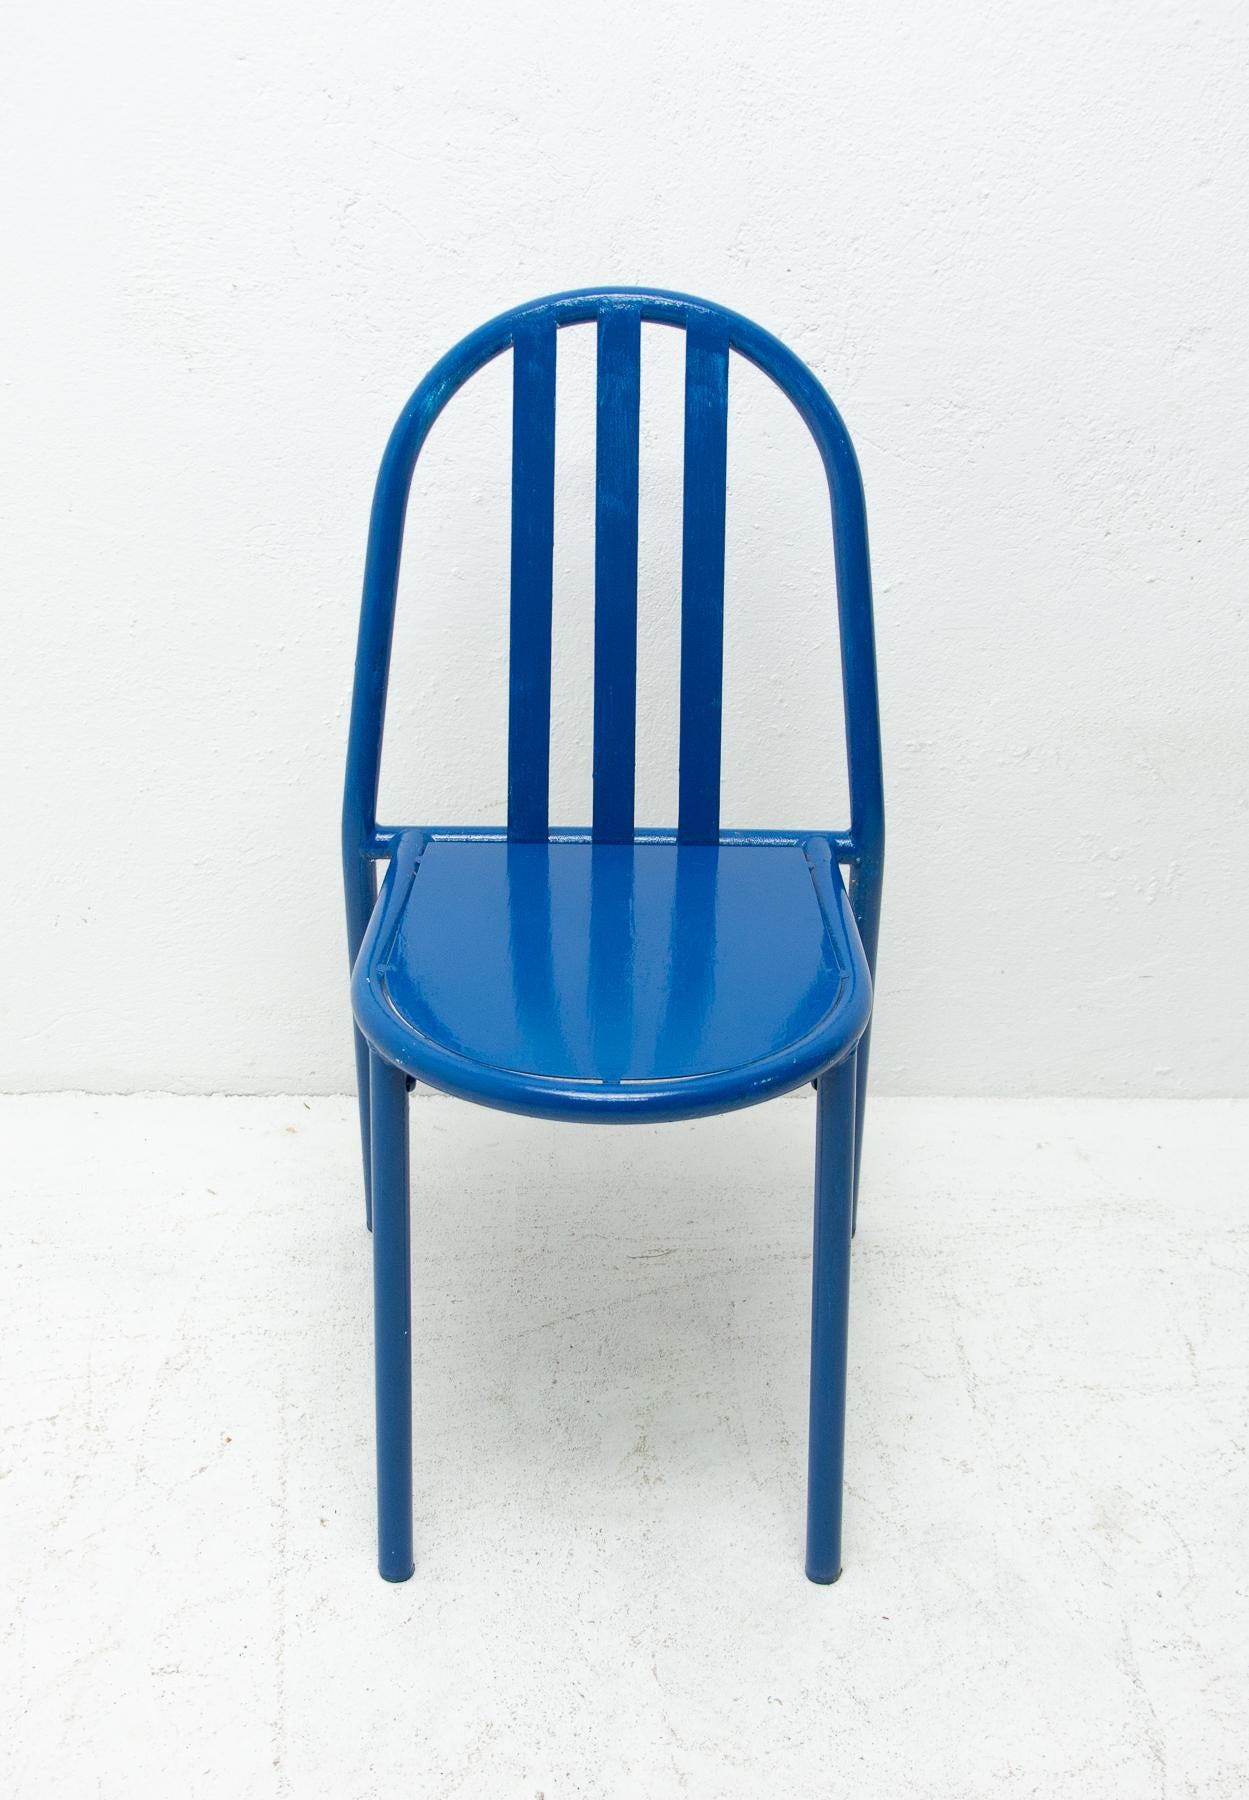 Metal Model No.222 Bauhaus Chairs by Robert Mallet-Stevens, 1960s